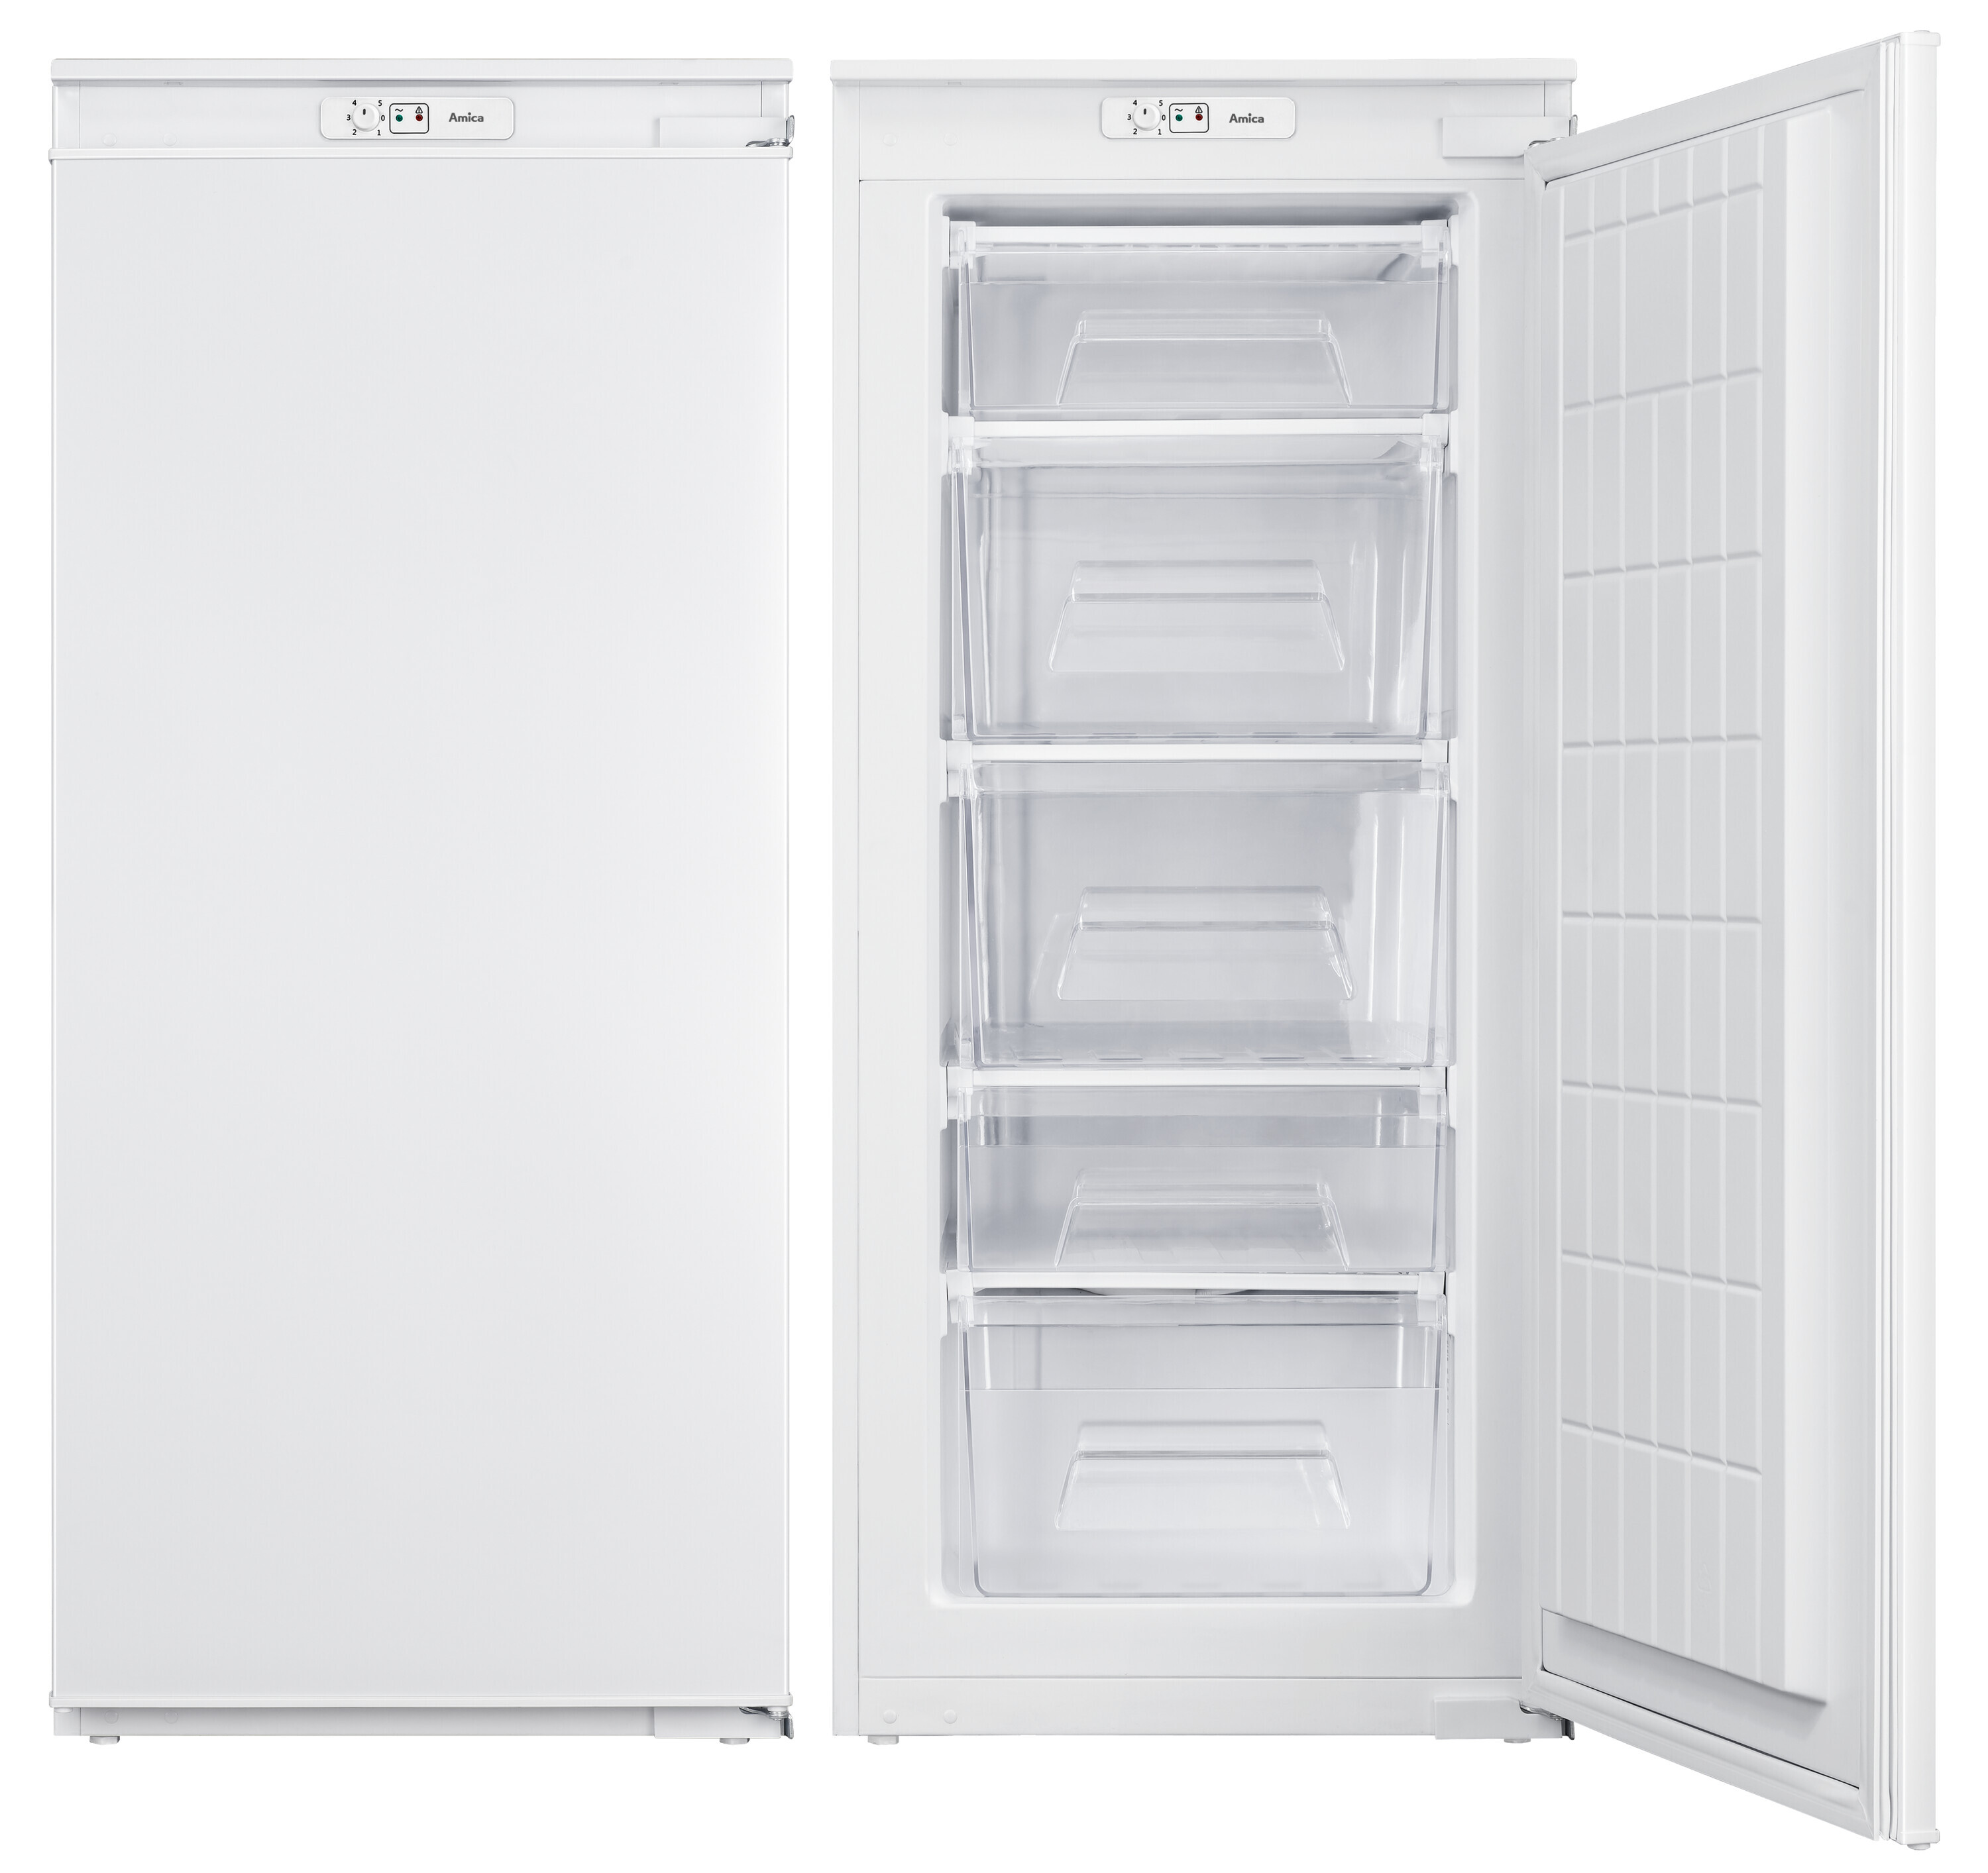 Built-in freezer